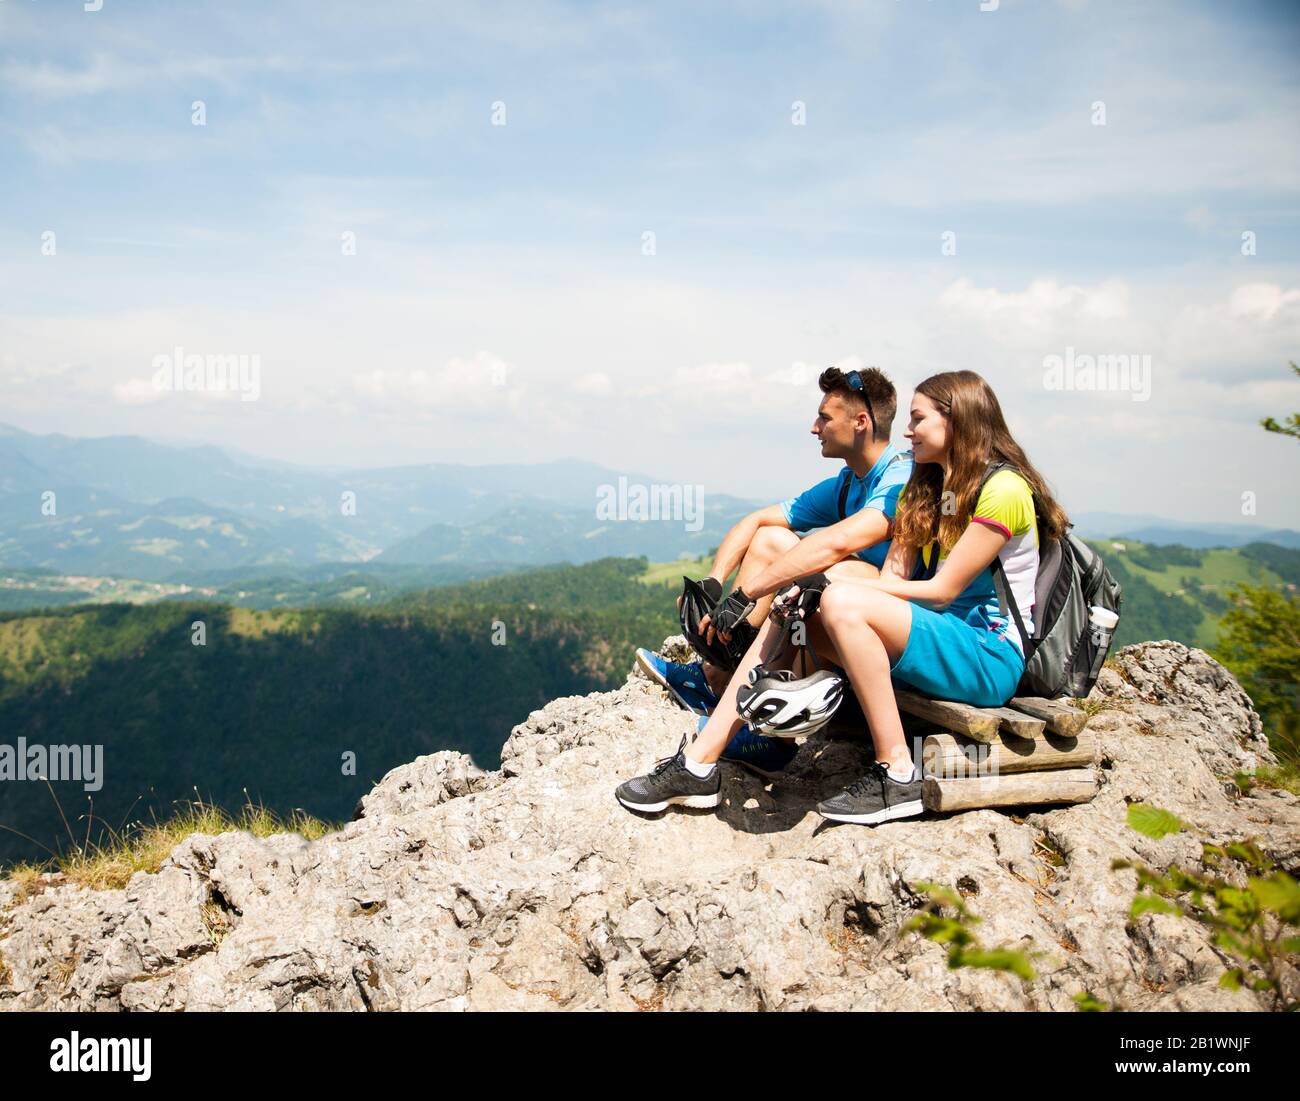 Aktives Paar ruht nach dem Fahrradfahren auf einer Bergkuppe Stockfoto